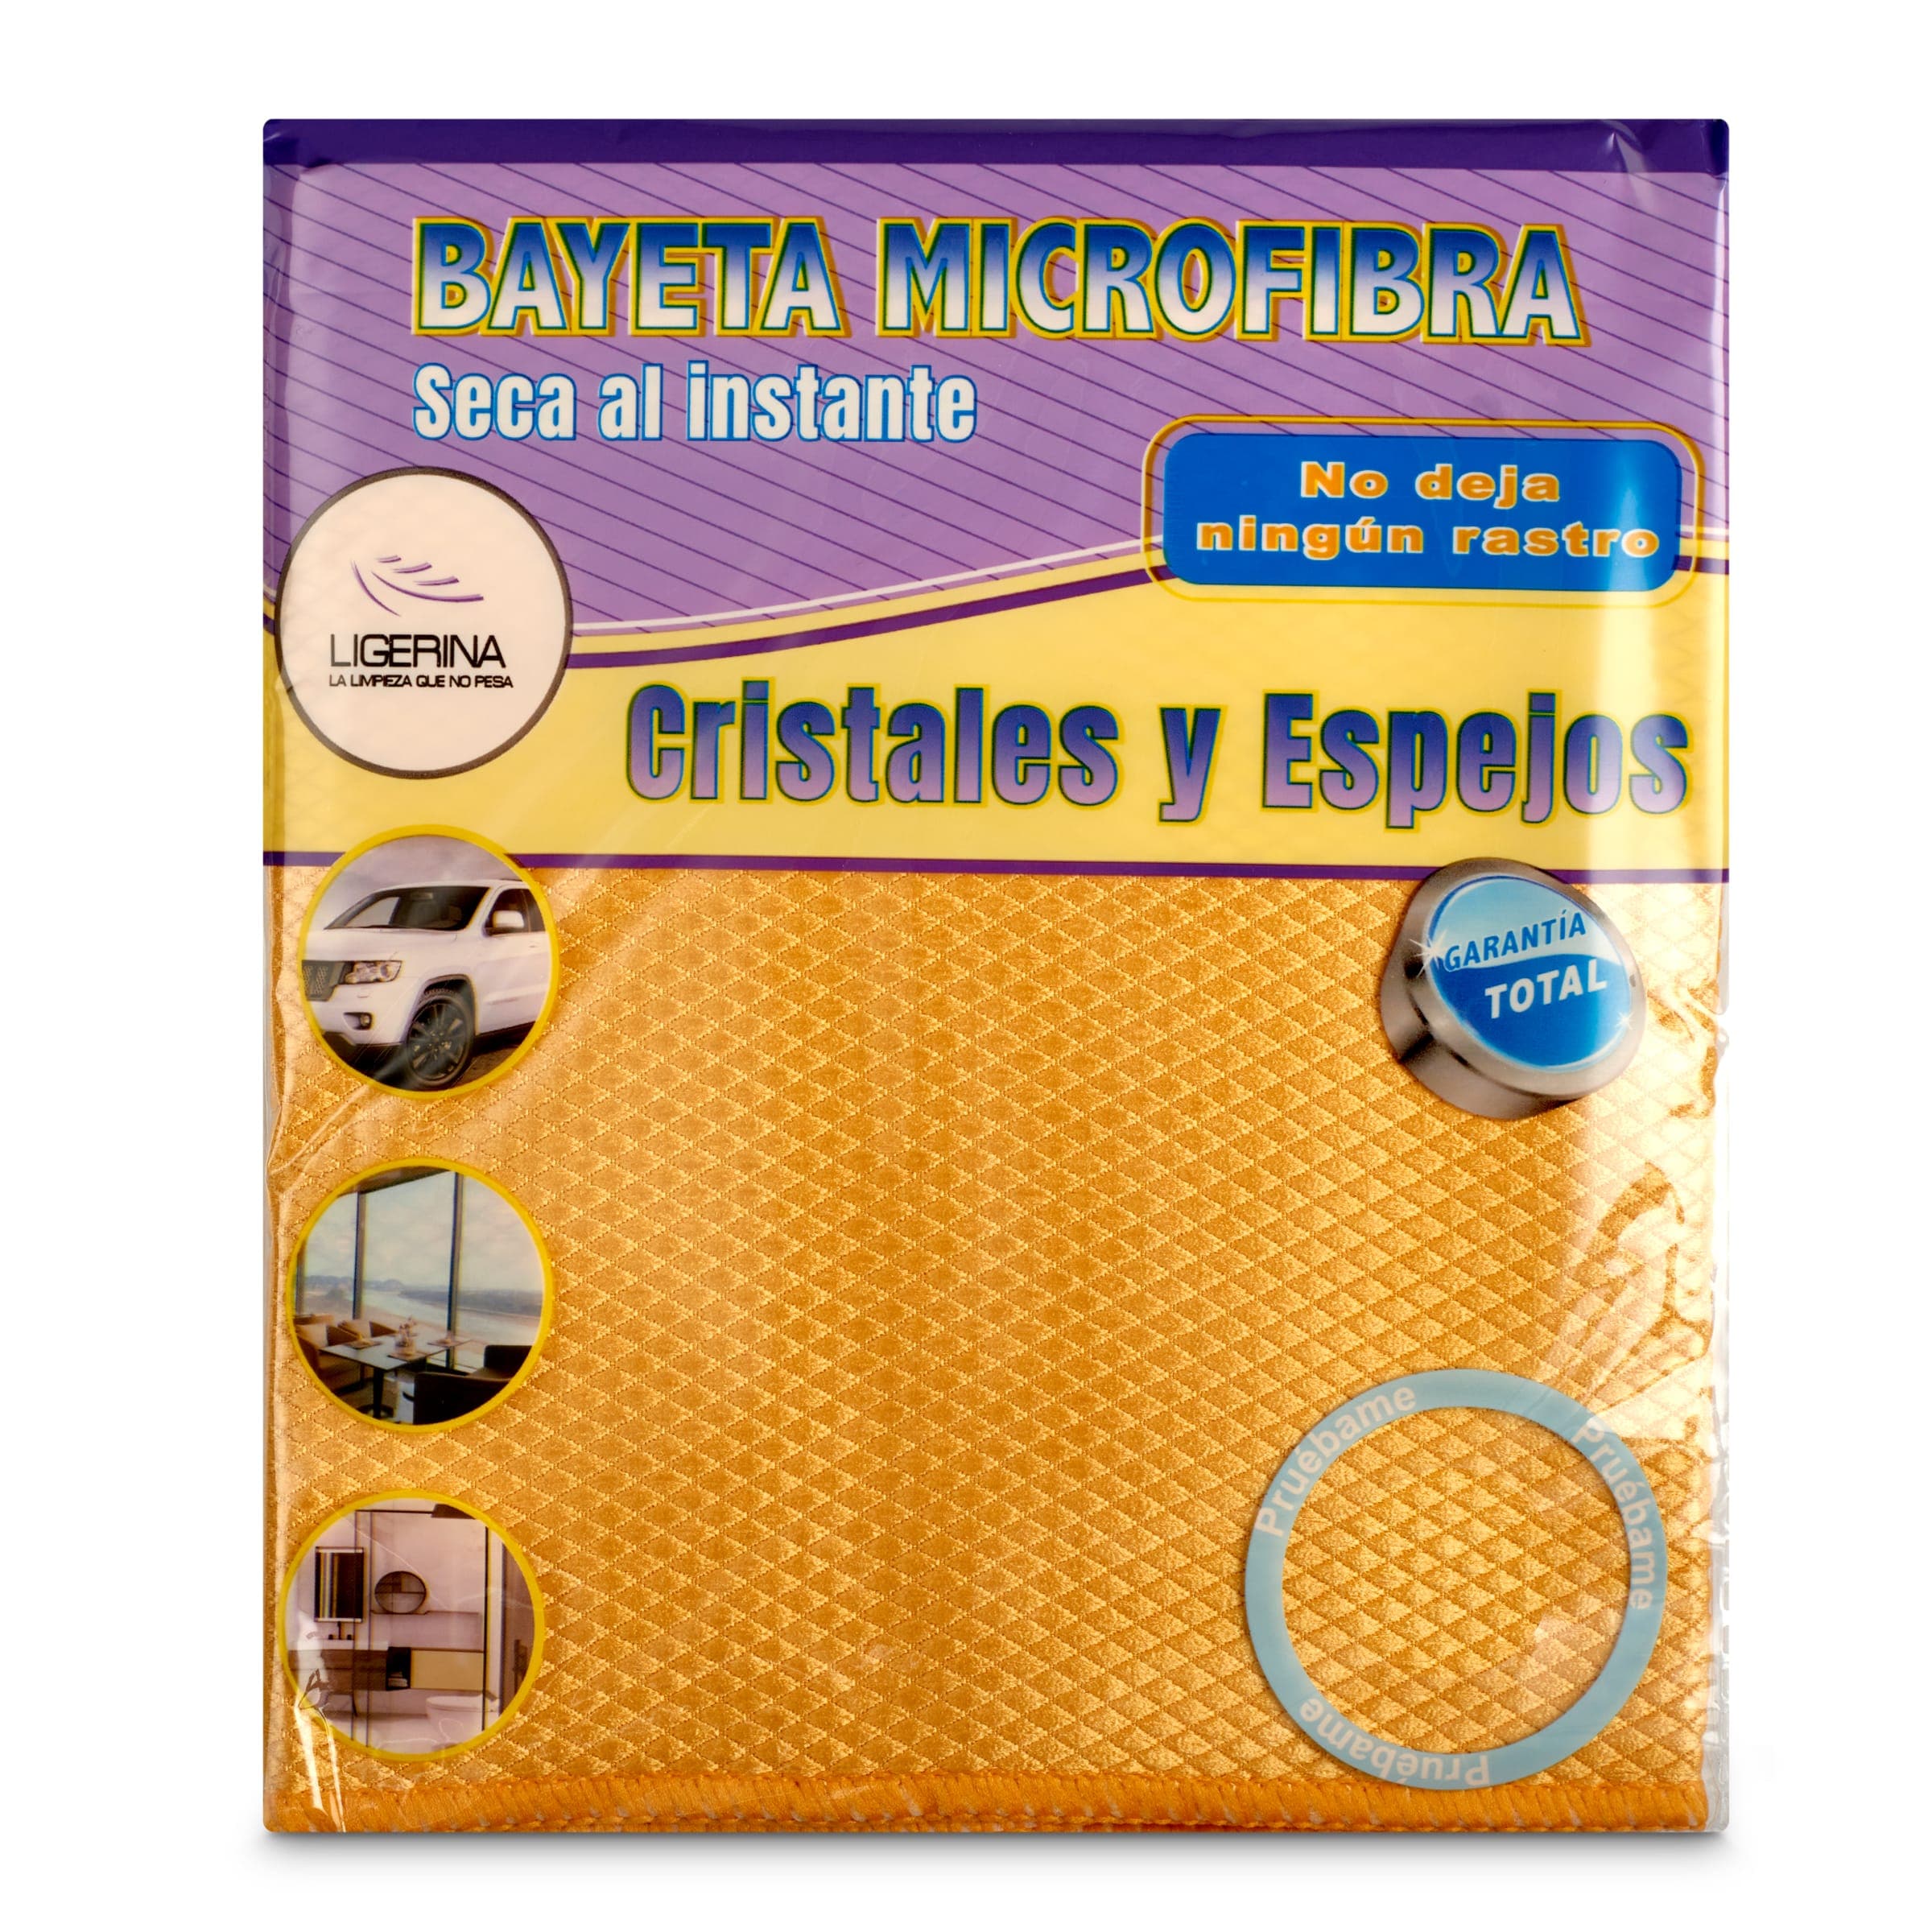 Bayeta microfibra cristales y espejos Ligerina bolsa 1 unidad -  Supermercados DIA